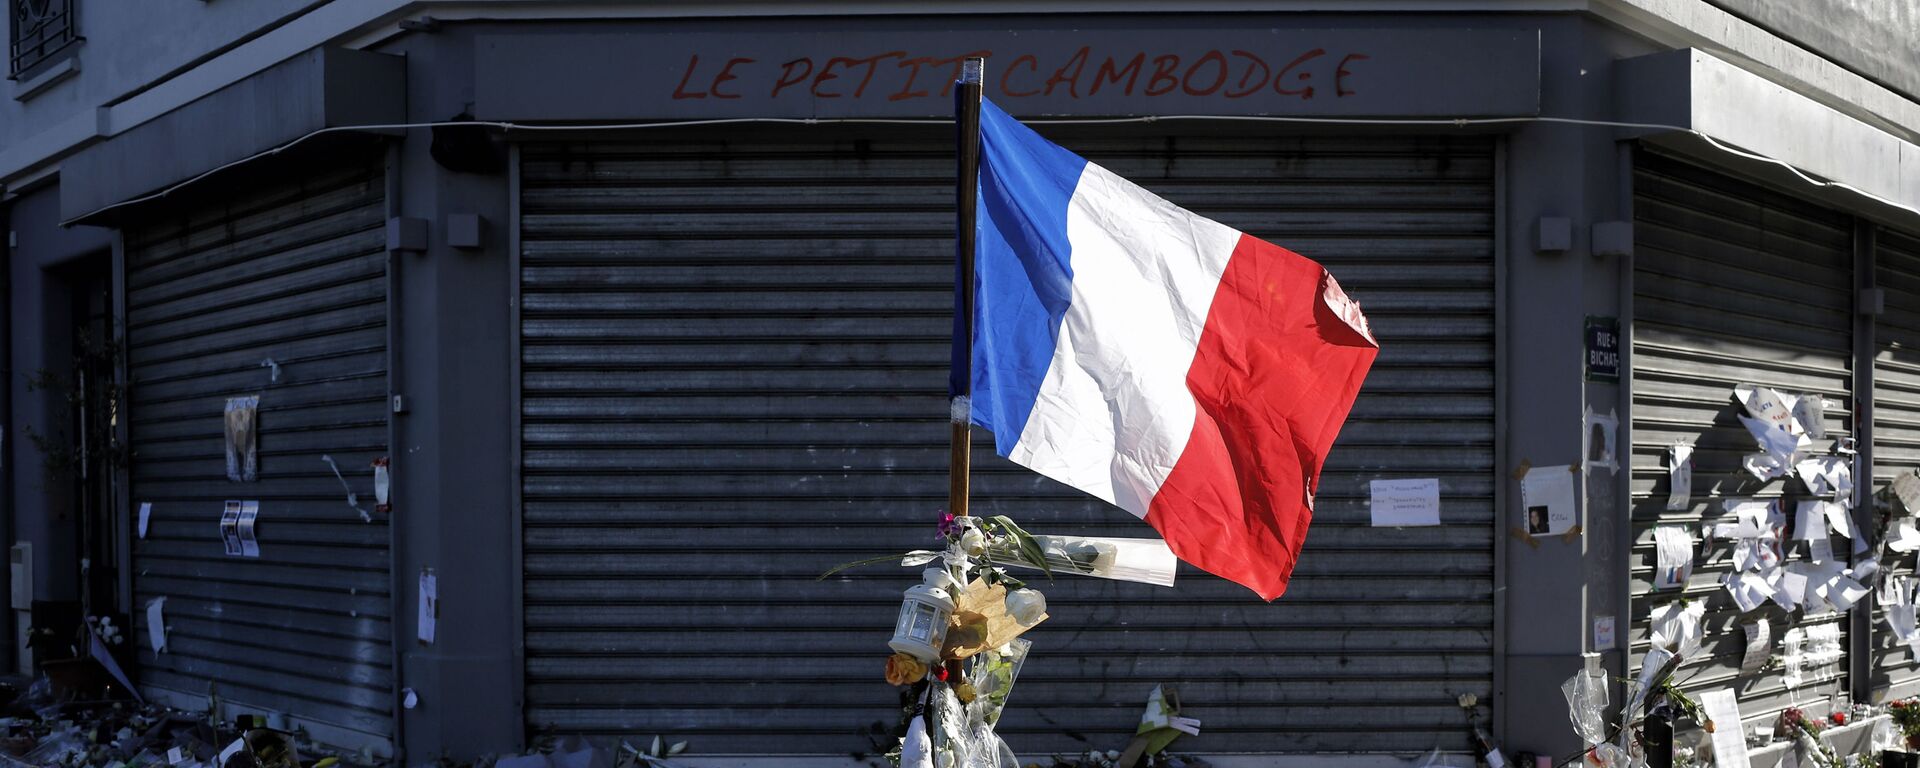 Una bandera francesa en el sitio del ataque terrorista en París en 2015 - Sputnik Mundo, 1920, 13.11.2020